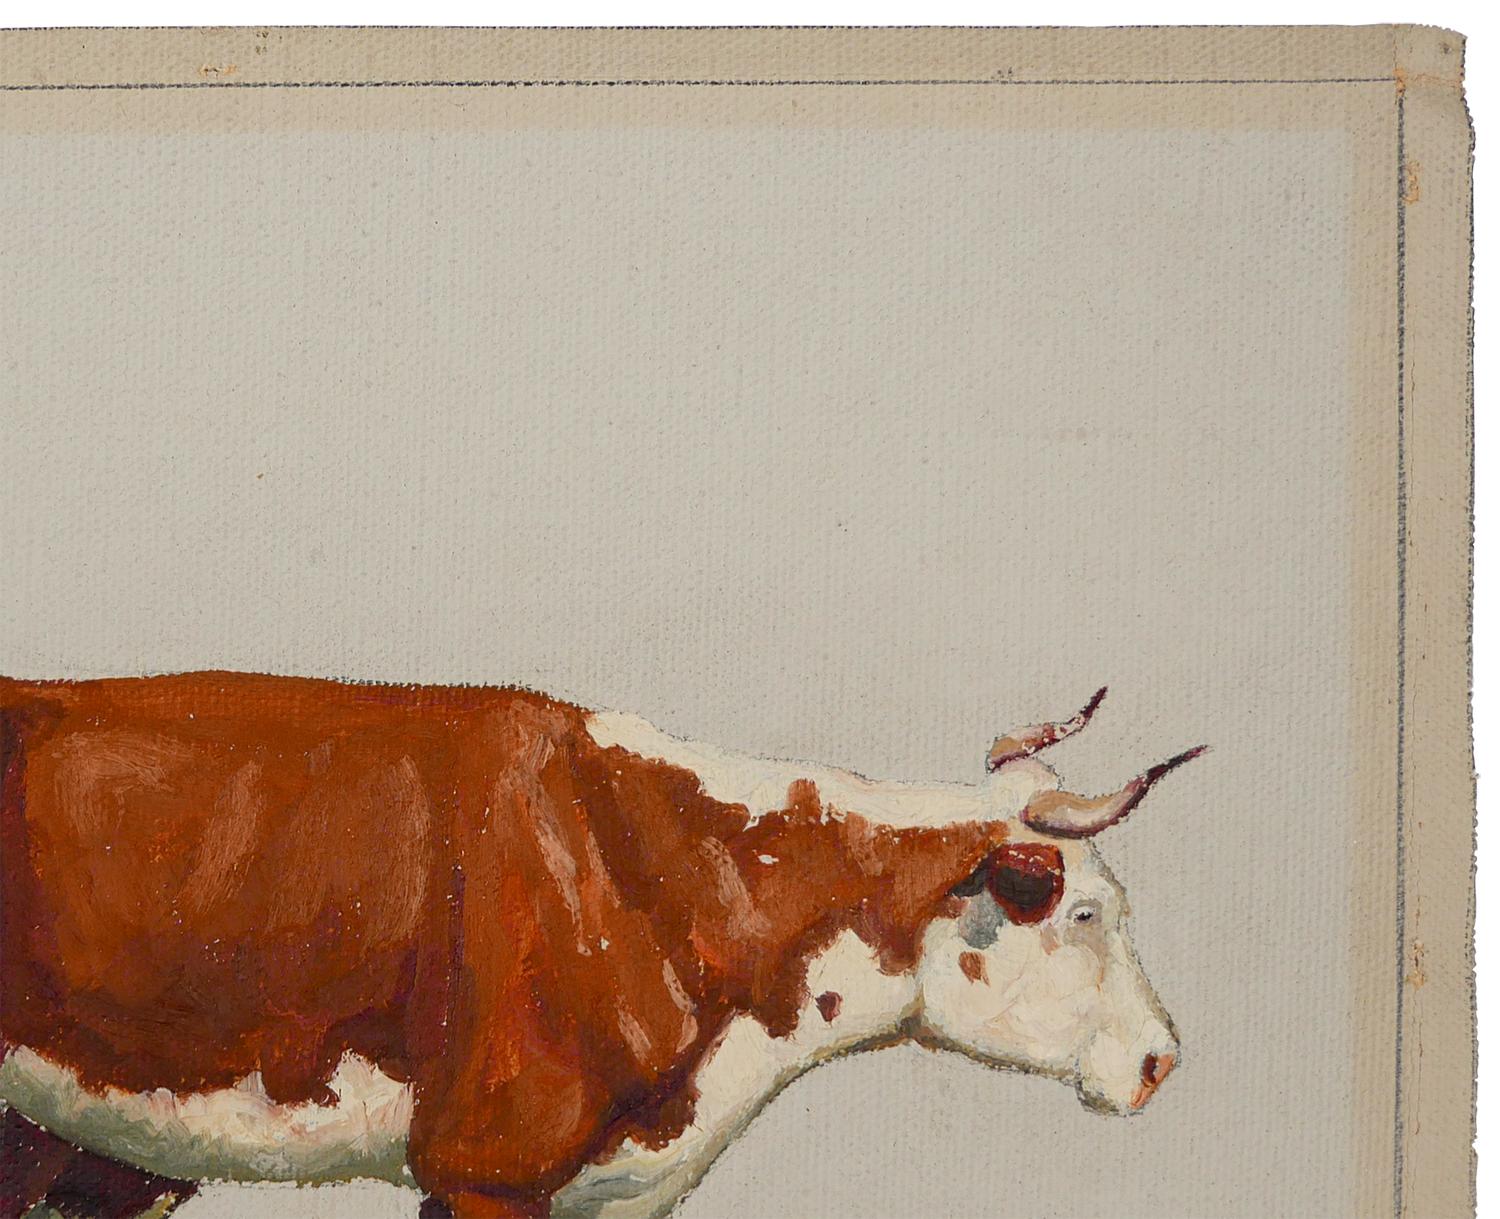 Braunes und weißes abstraktes impressionistisches Tiergemälde des texanischen Künstlers Fred Darge. Das Gemälde zeigt eine braun-weiße Kuh und ein Kalb, die auf trockenem Boden laufen. Signiert vom Künstler in der rechten unteren Ecke. Ungespannt